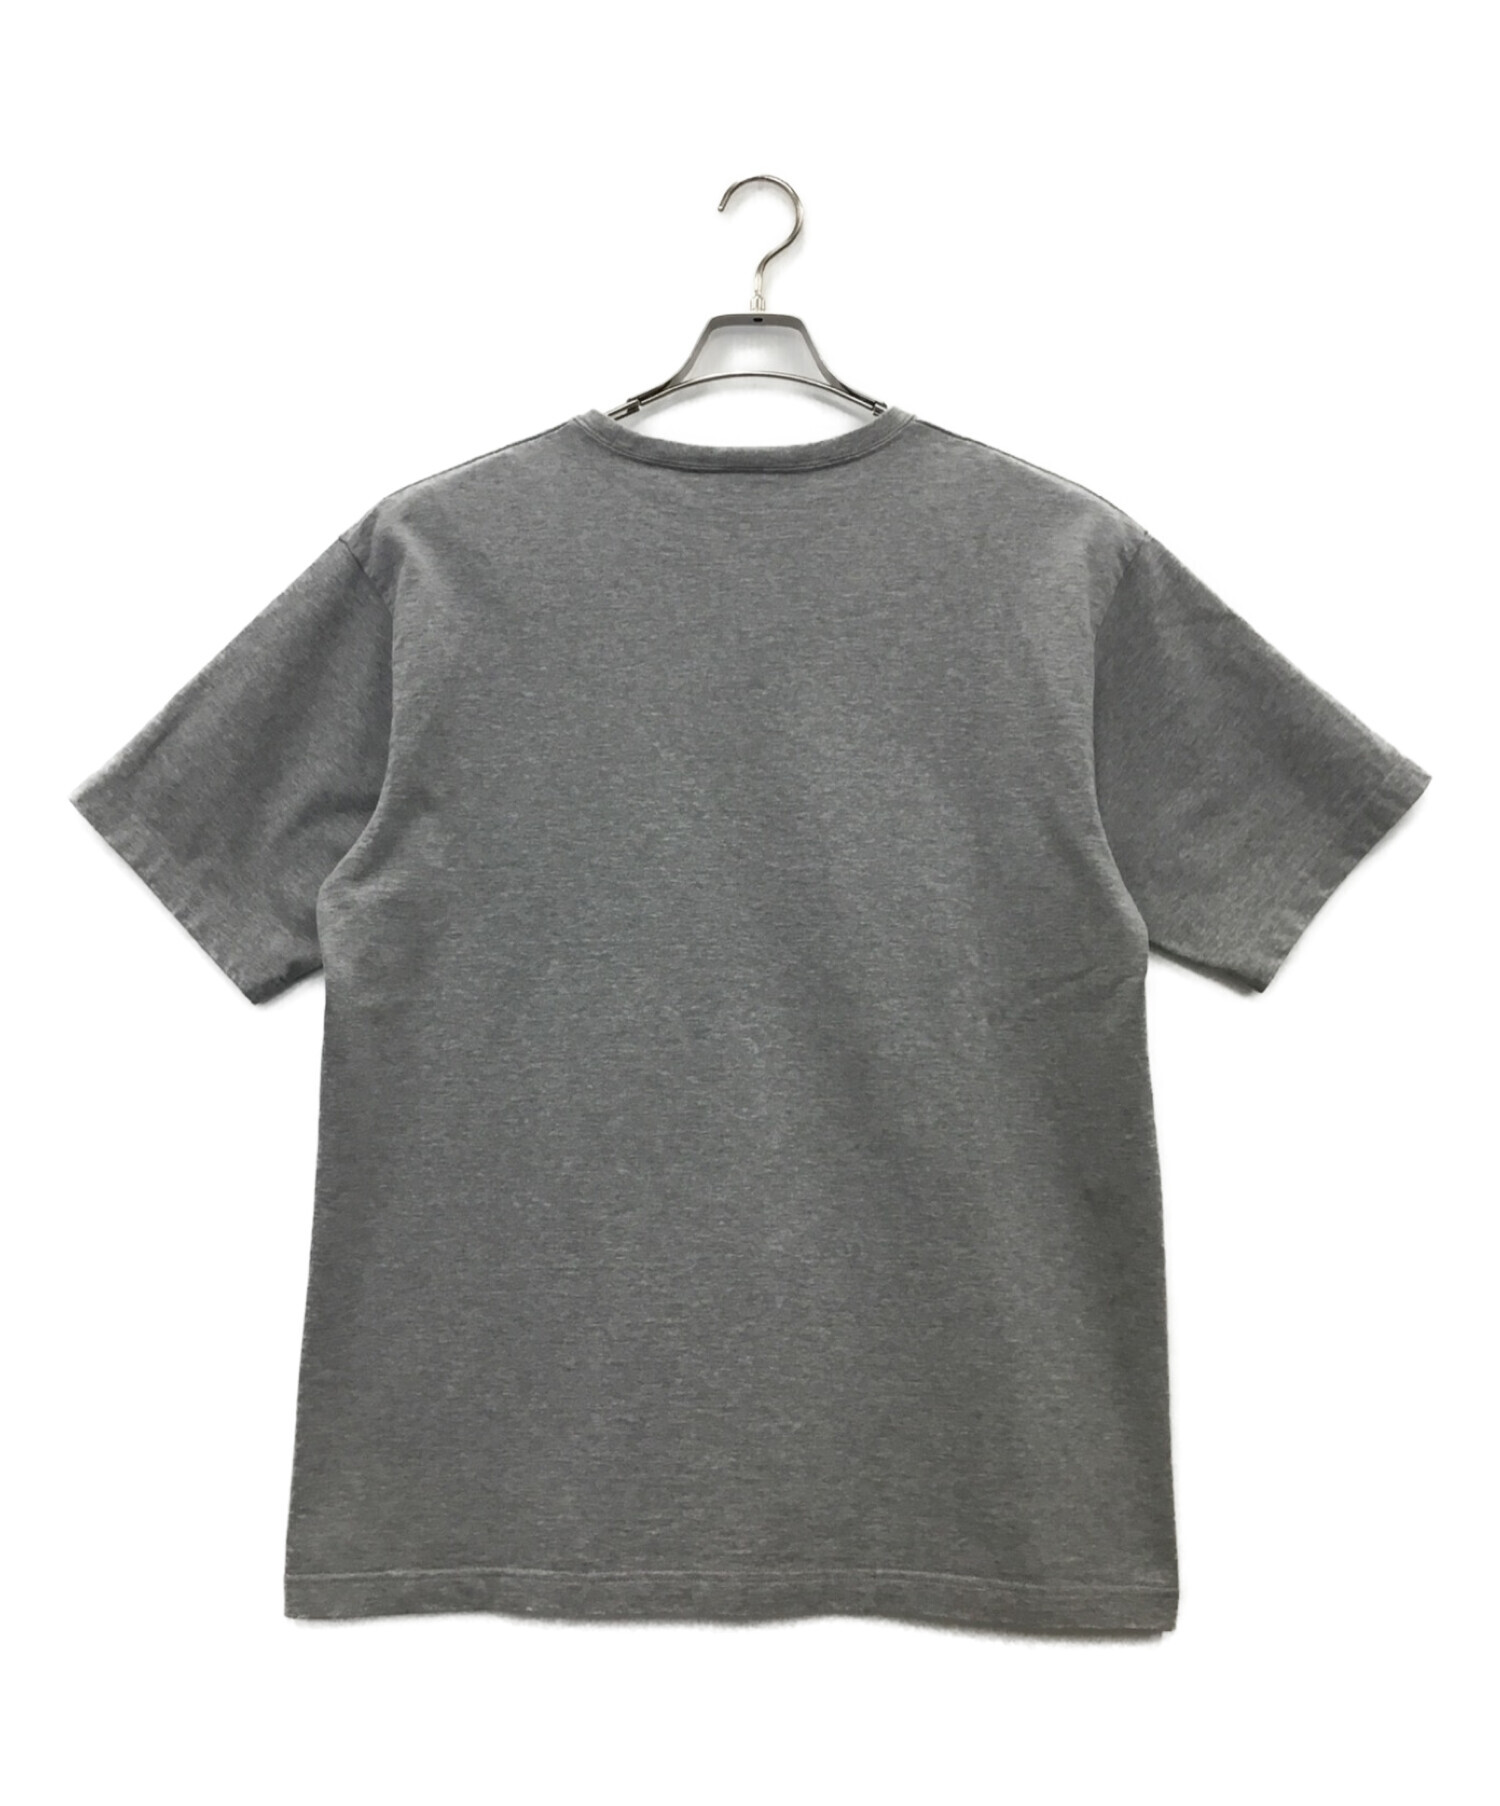 WTAPS (ダブルタップス) Tシャツ グレー サイズ:02